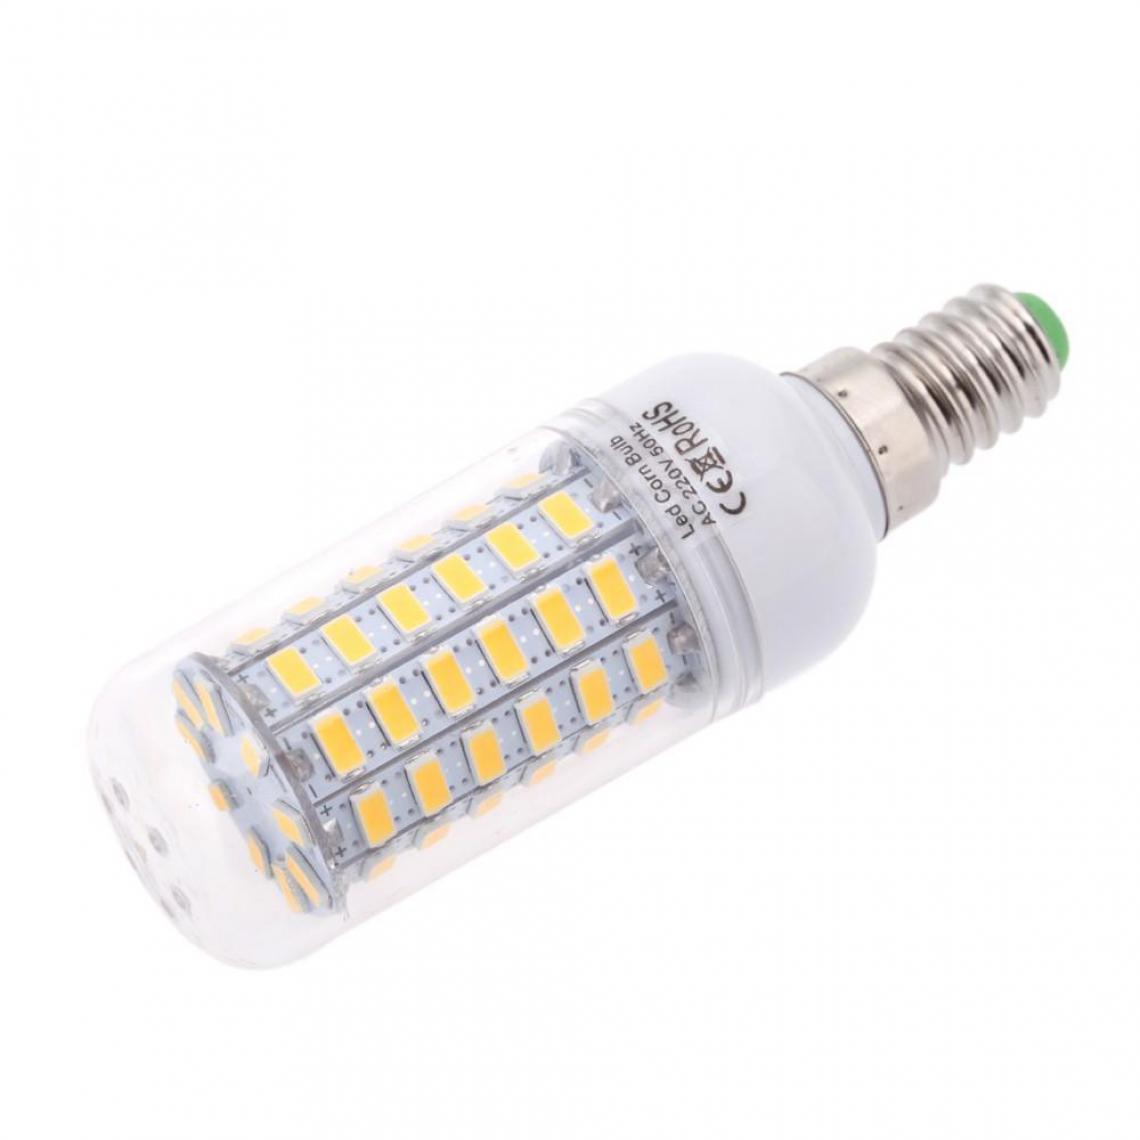 Justgreenbox - Ampoule de maïs à économie d'énergie 360 degrés 200-240V E14, Natural Blanc, 9W - Ampoules LED